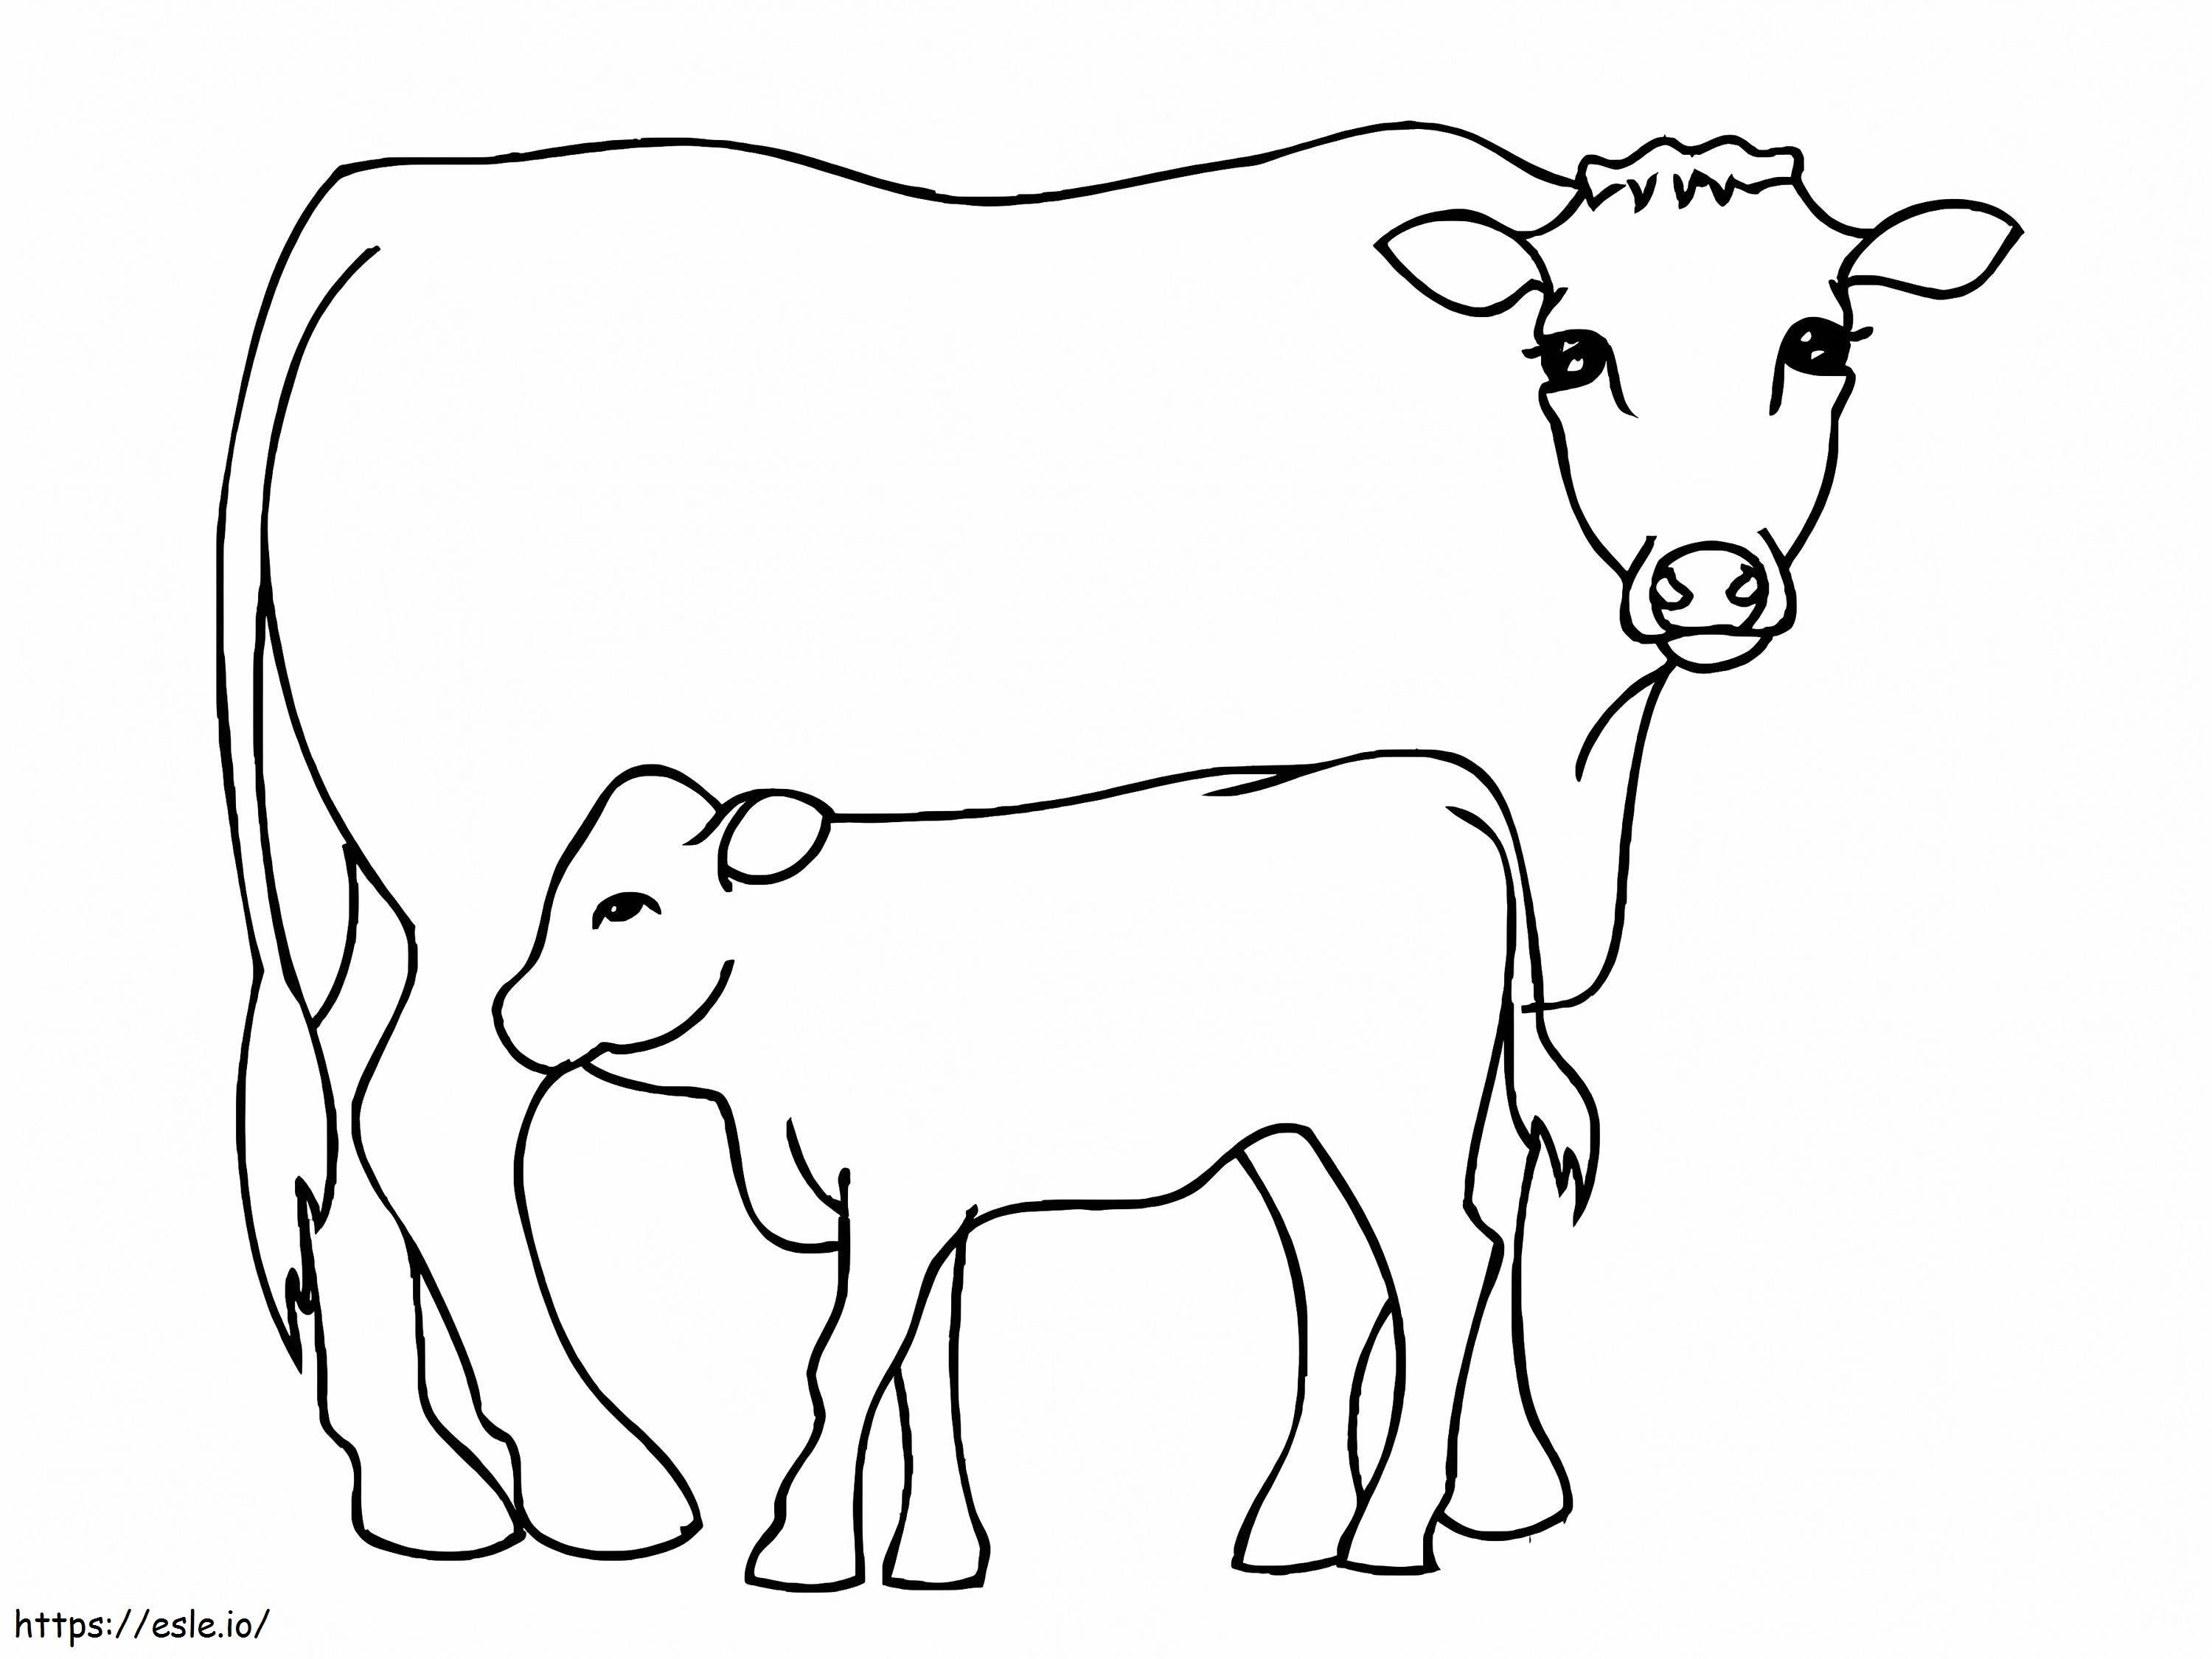 Kuh und Kalb 2 ausmalbilder